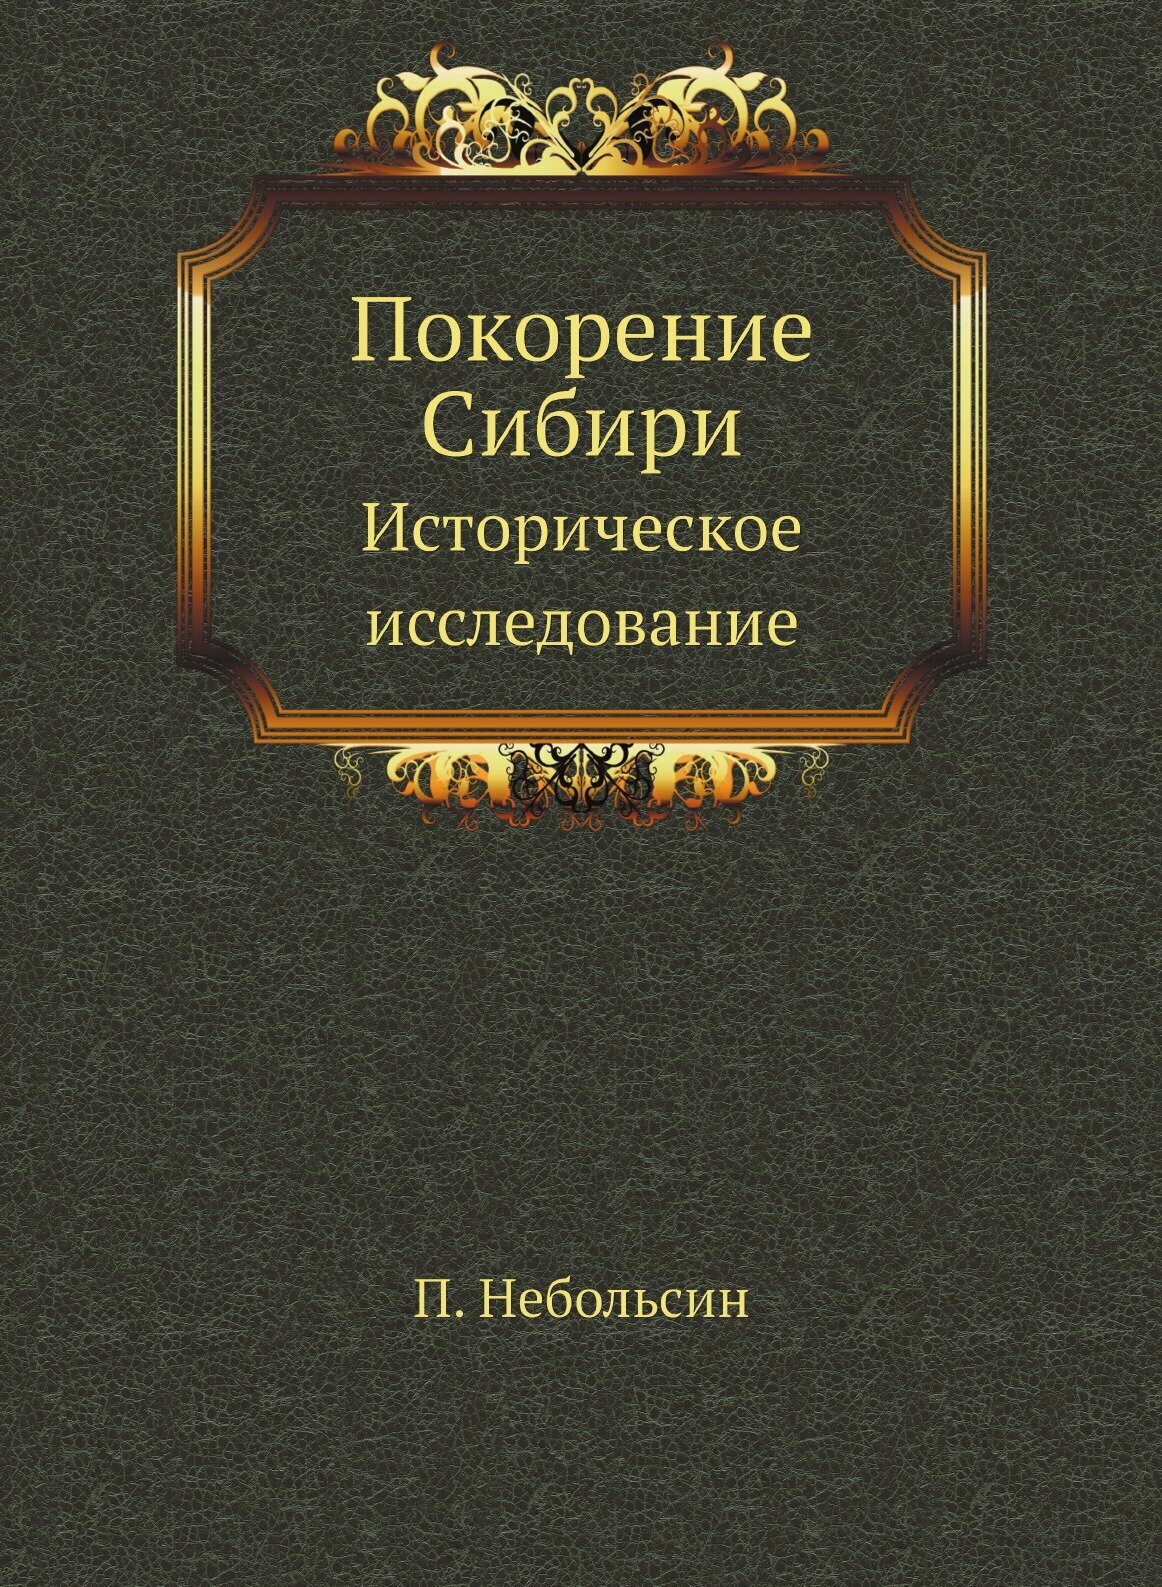 Покорение Сибири. Историческое исследование